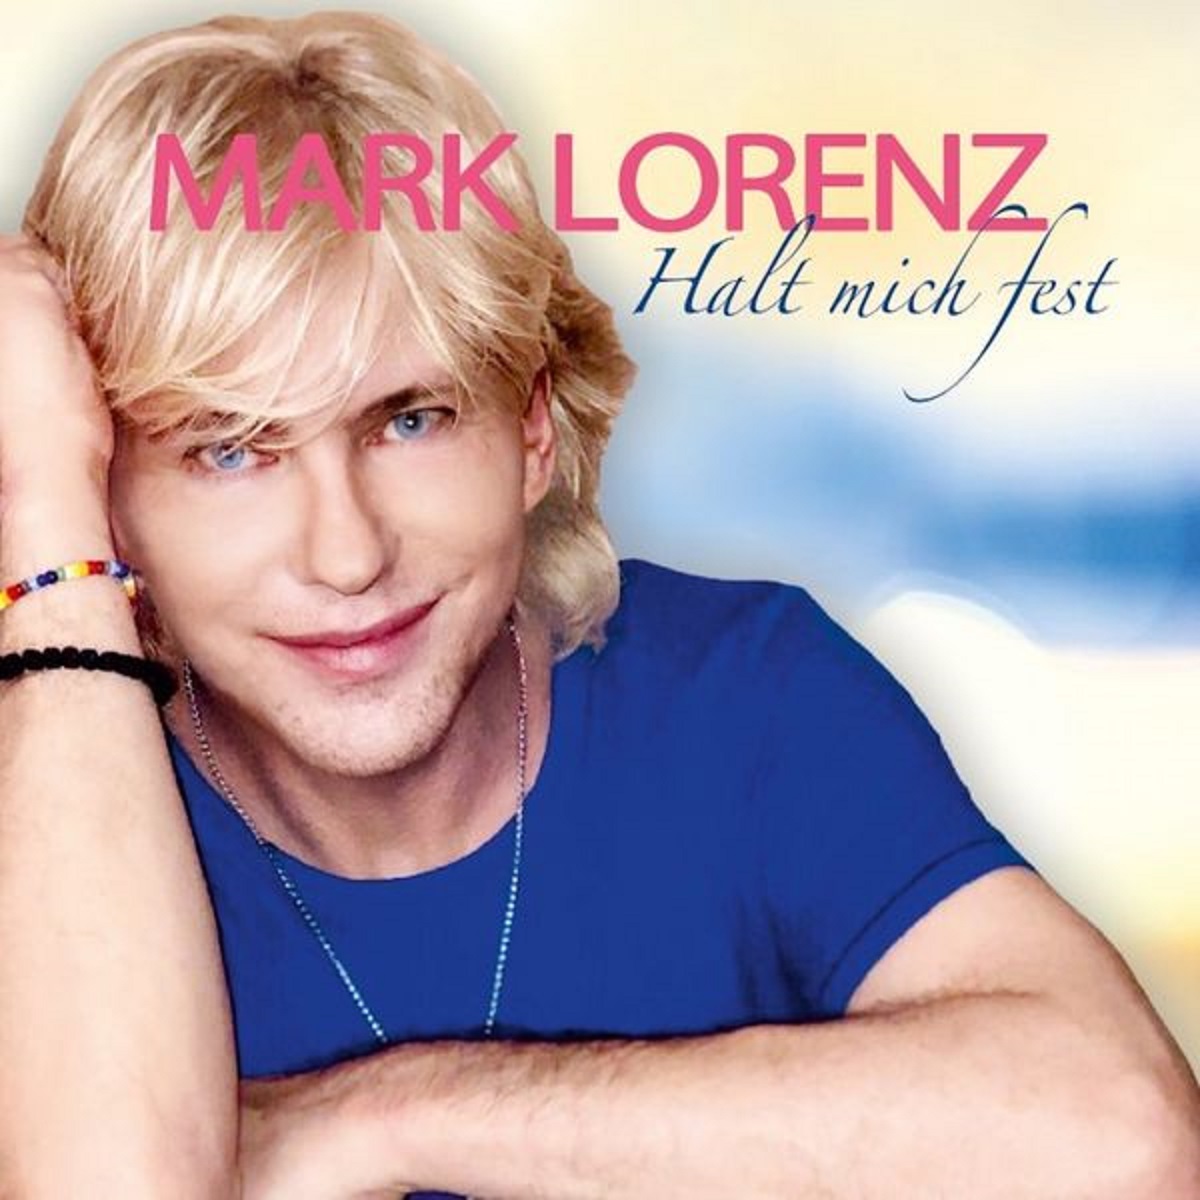 Mark Lorenz - Halt mich fest (2022)